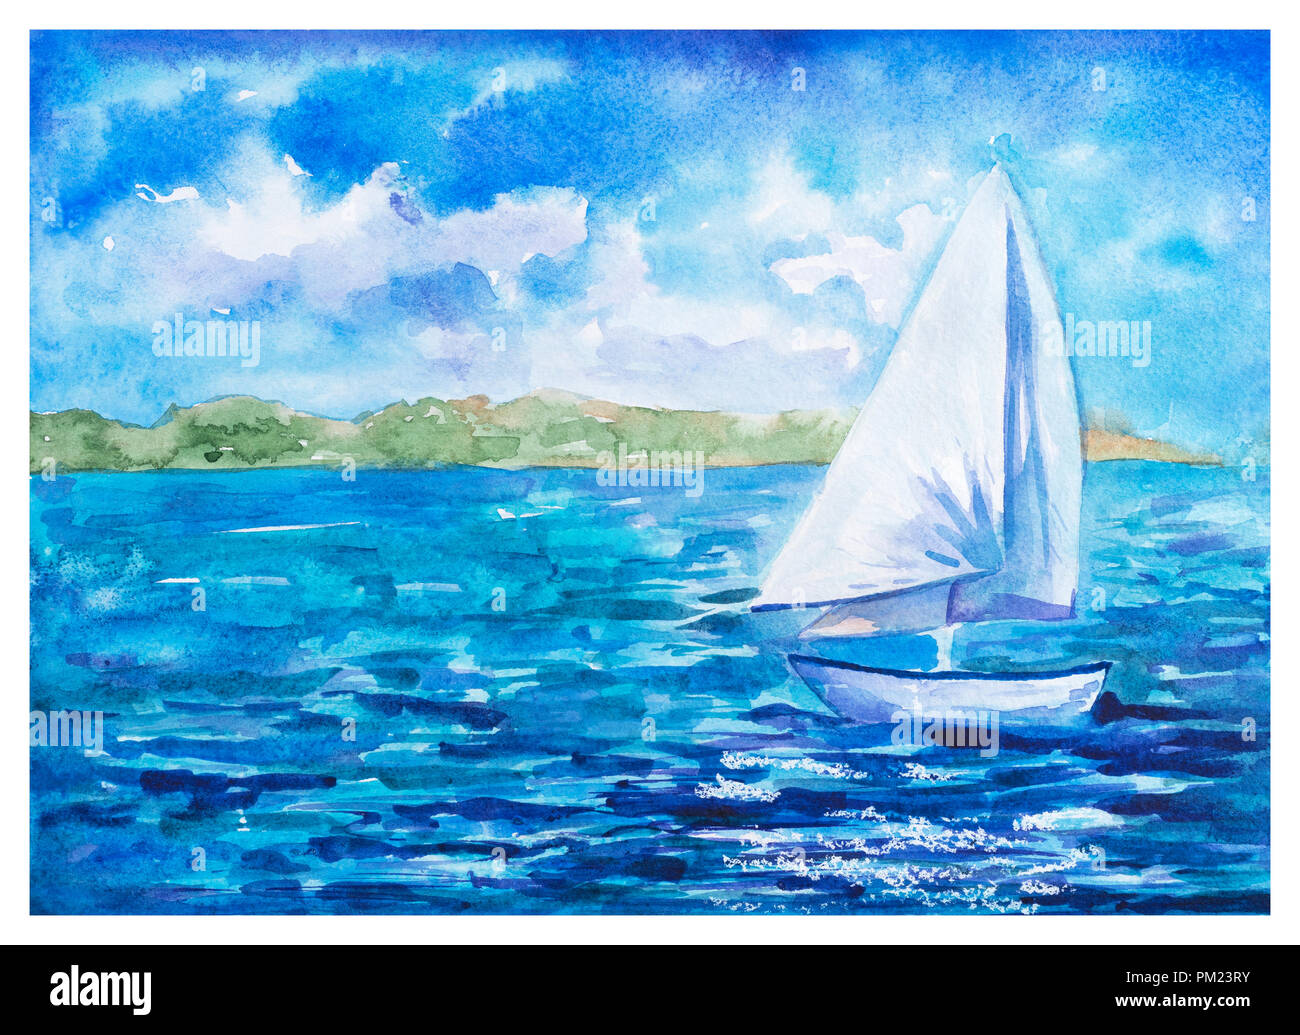 Sommer Landschaft: Kleine große Schiff mit weissen Segeln Floating im tiefen blauen Meer, Aquarell gezeichneten und gemalten Stockfoto